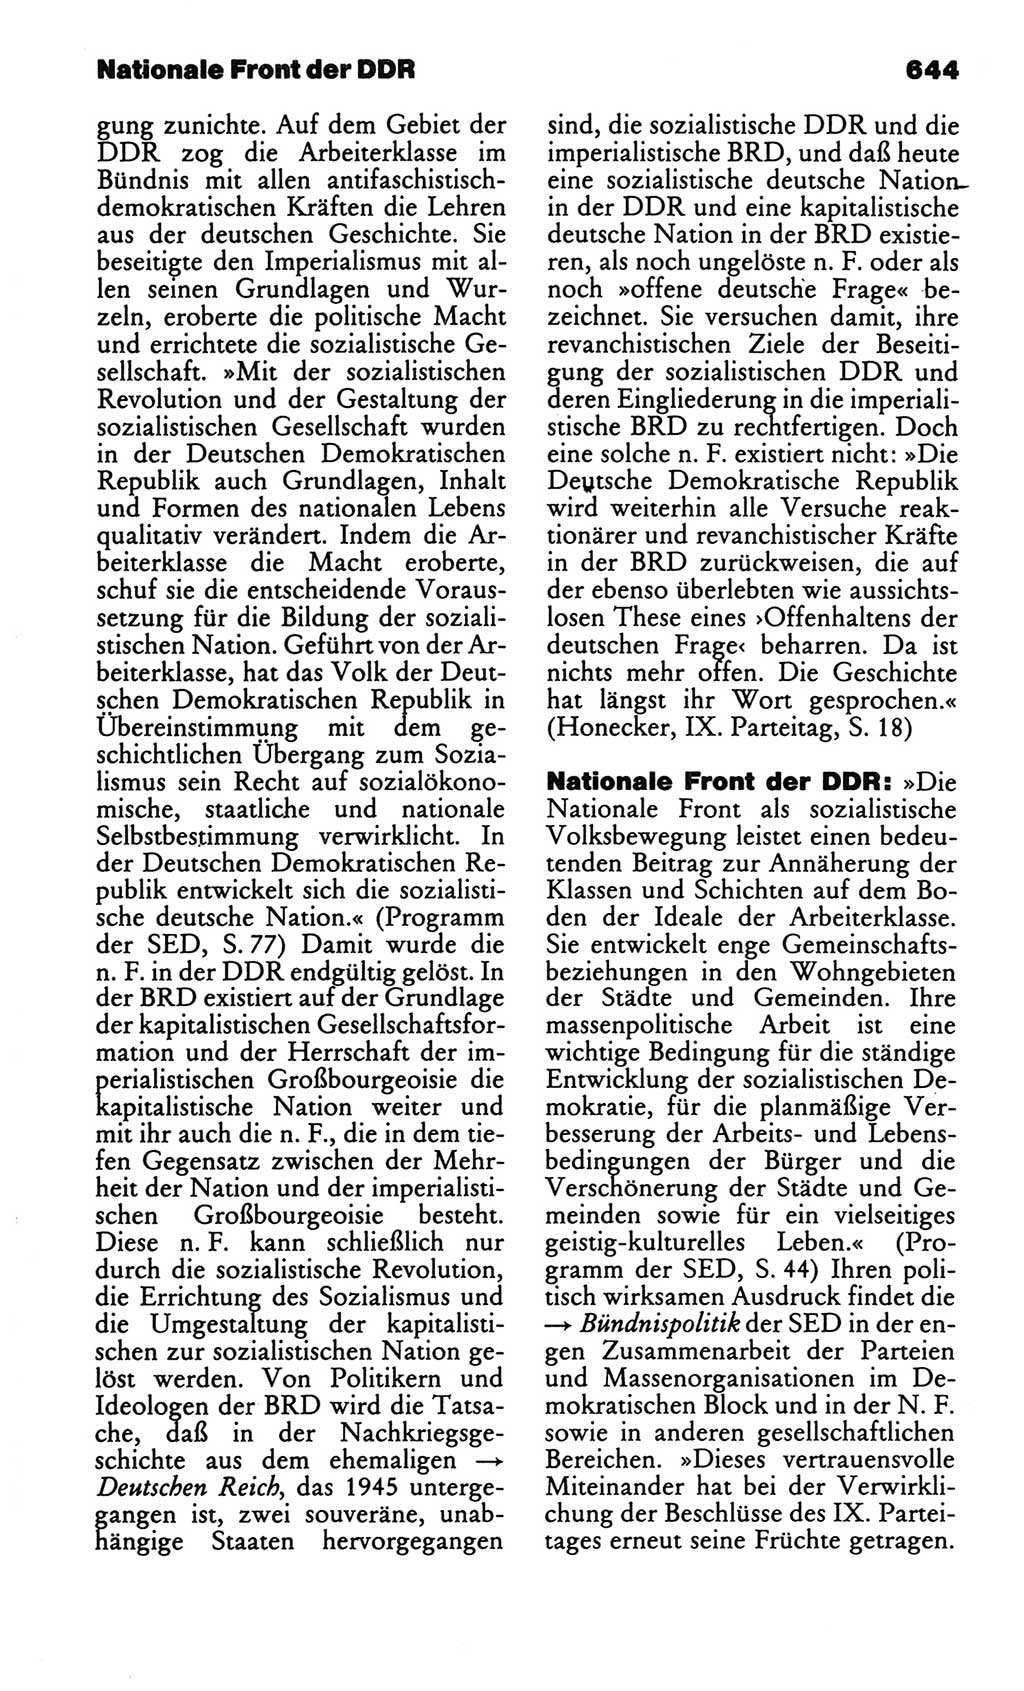 Kleines politisches Wörterbuch [Deutsche Demokratische Republik (DDR)] 1986, Seite 644 (Kl. pol. Wb. DDR 1986, S. 644)